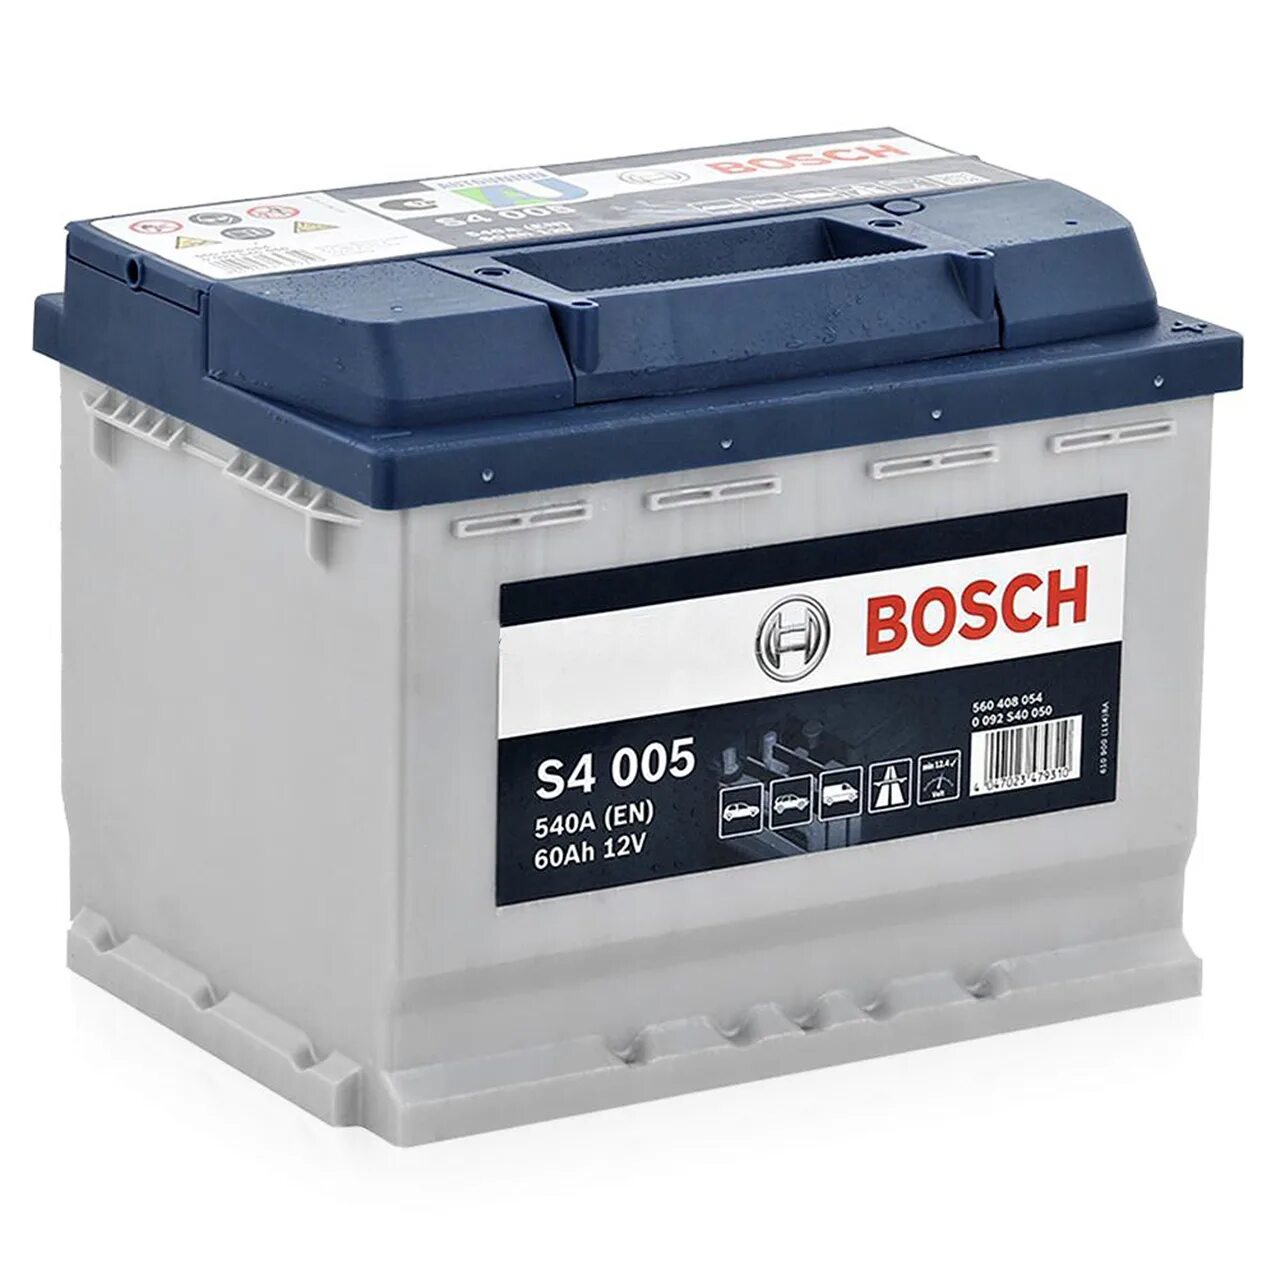 Аккумулятор Bosch 60ah. Аккумулятор Bosch автомобильный 60 Ач. 0092s40060 АКБ s4 006 Силвер 12v 60ah 540a. Bosch 60 АКБ s5004. Аккумулятор автомобильный 242x175x190